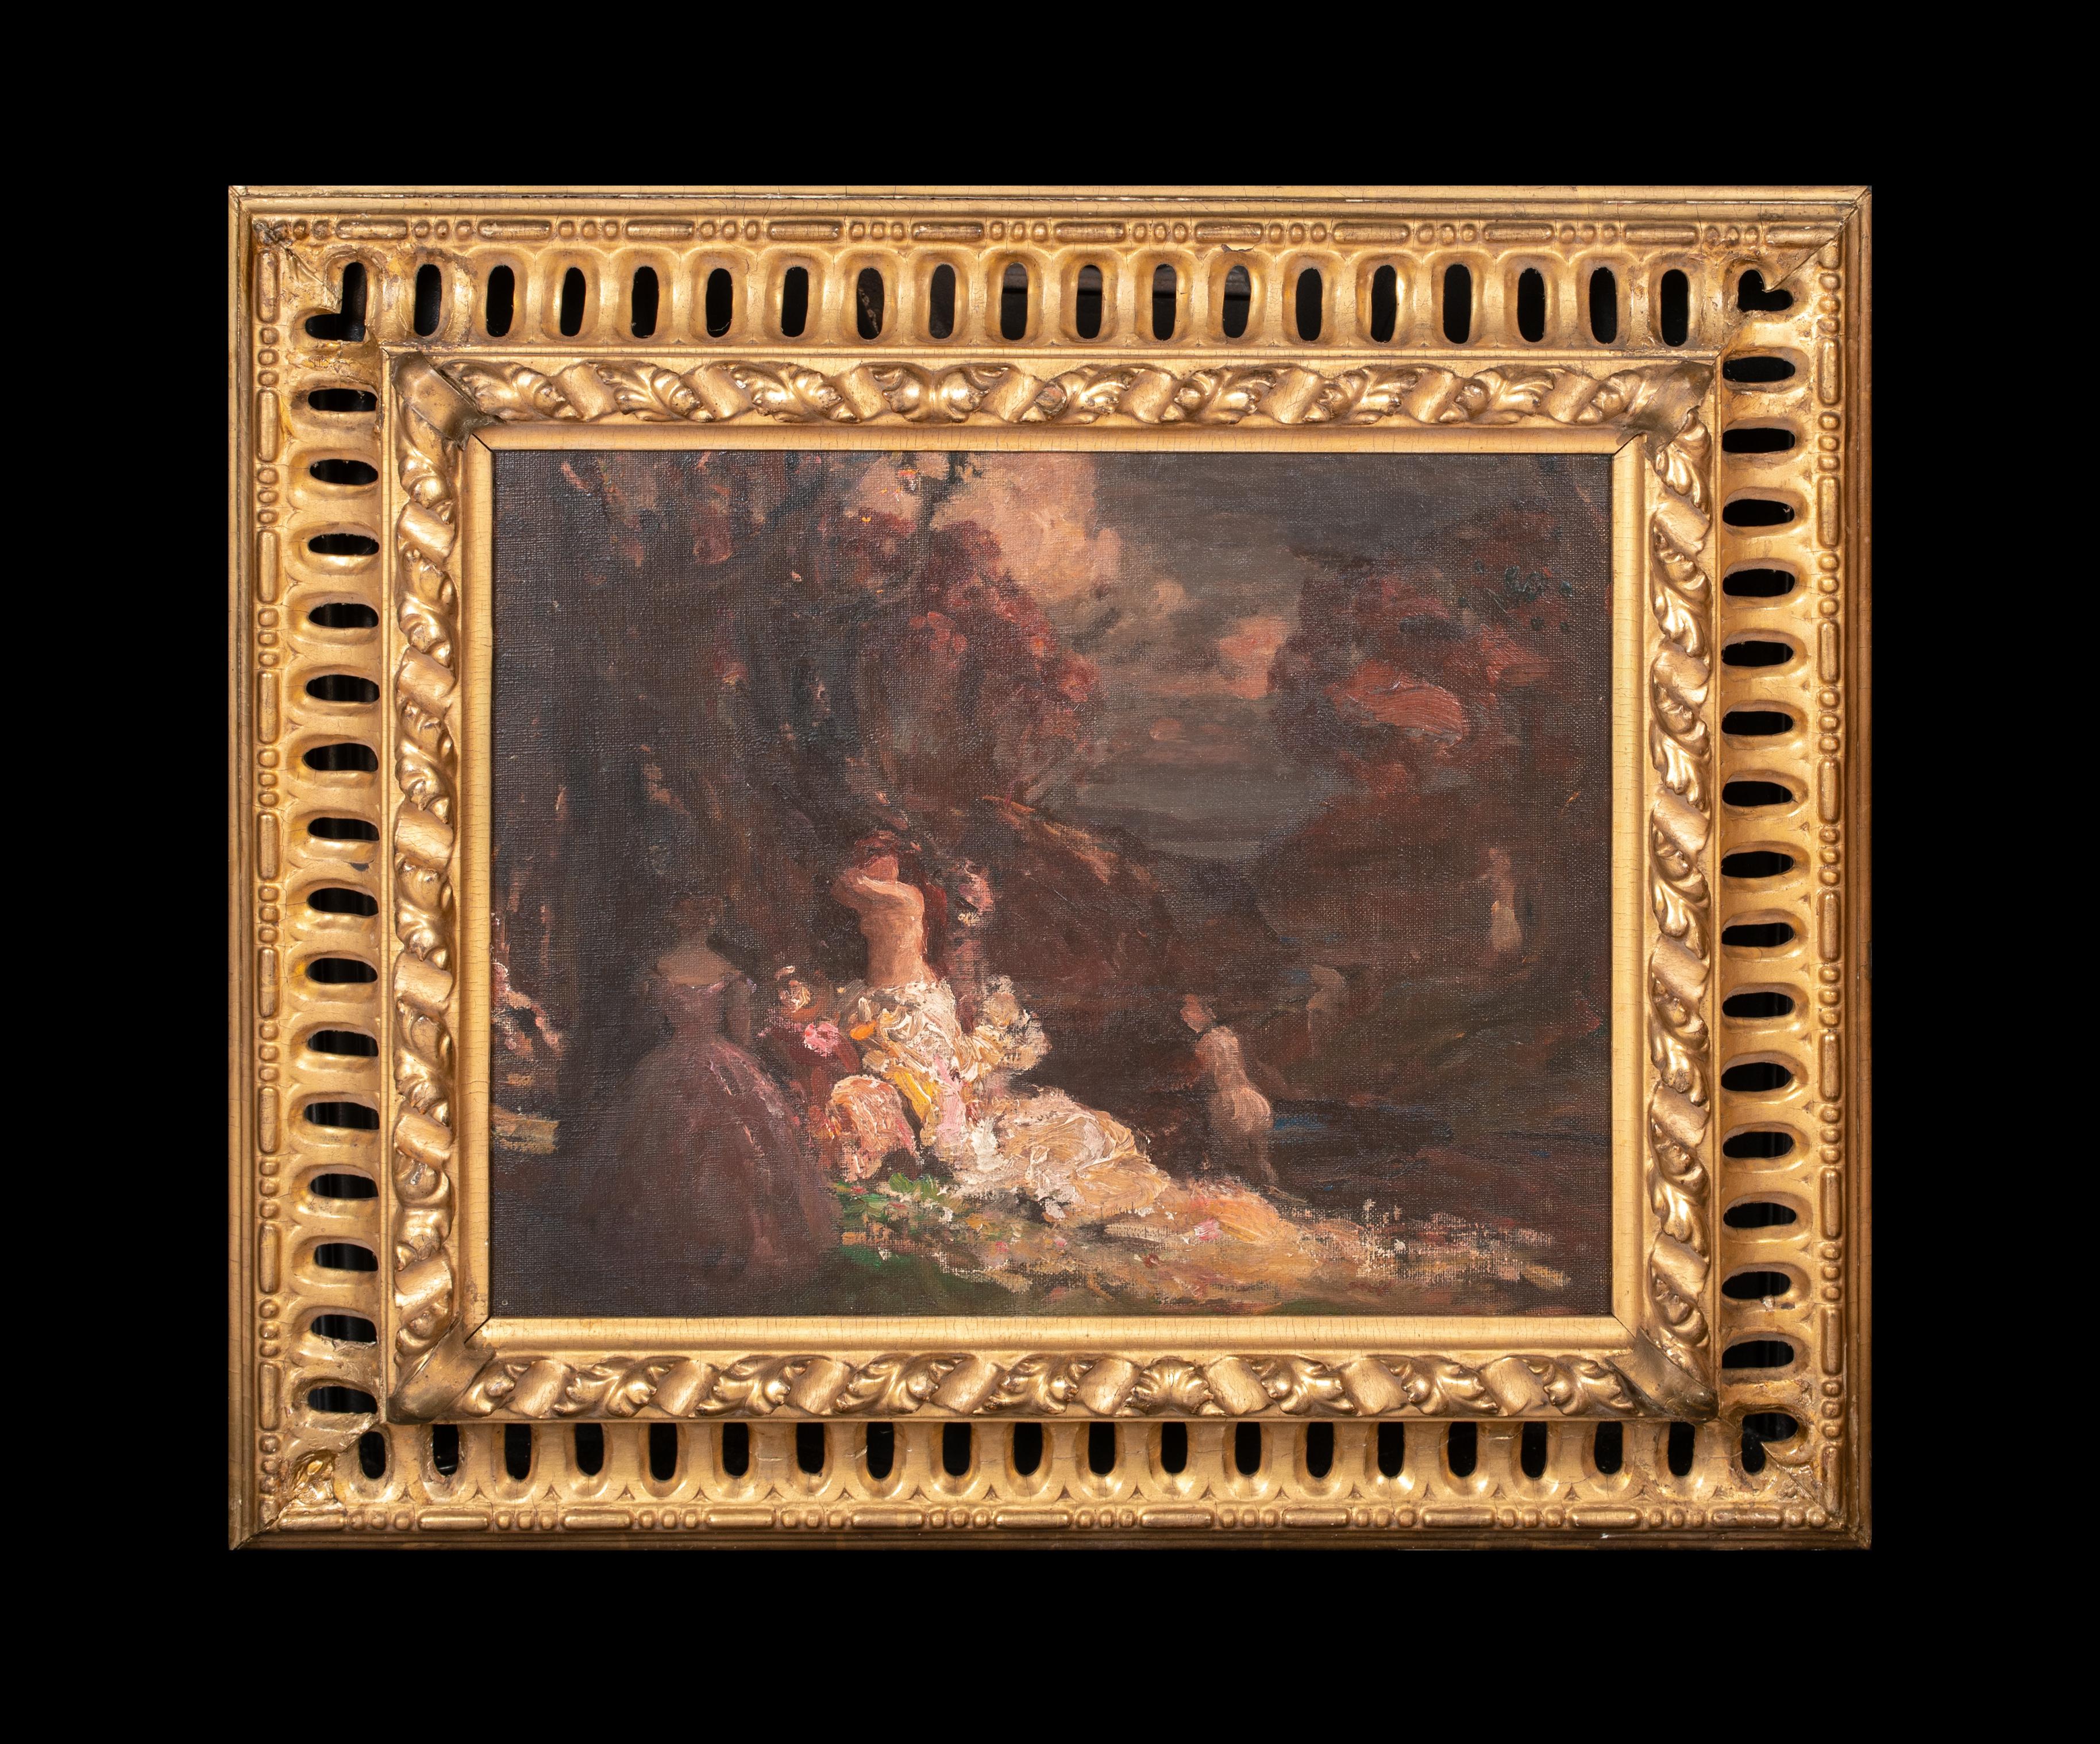 Femme dan les sous-bois, Adolphe MONTICELLI (1824-1886), 19. Jahrhundert  – Painting von Adolphe Monticelli